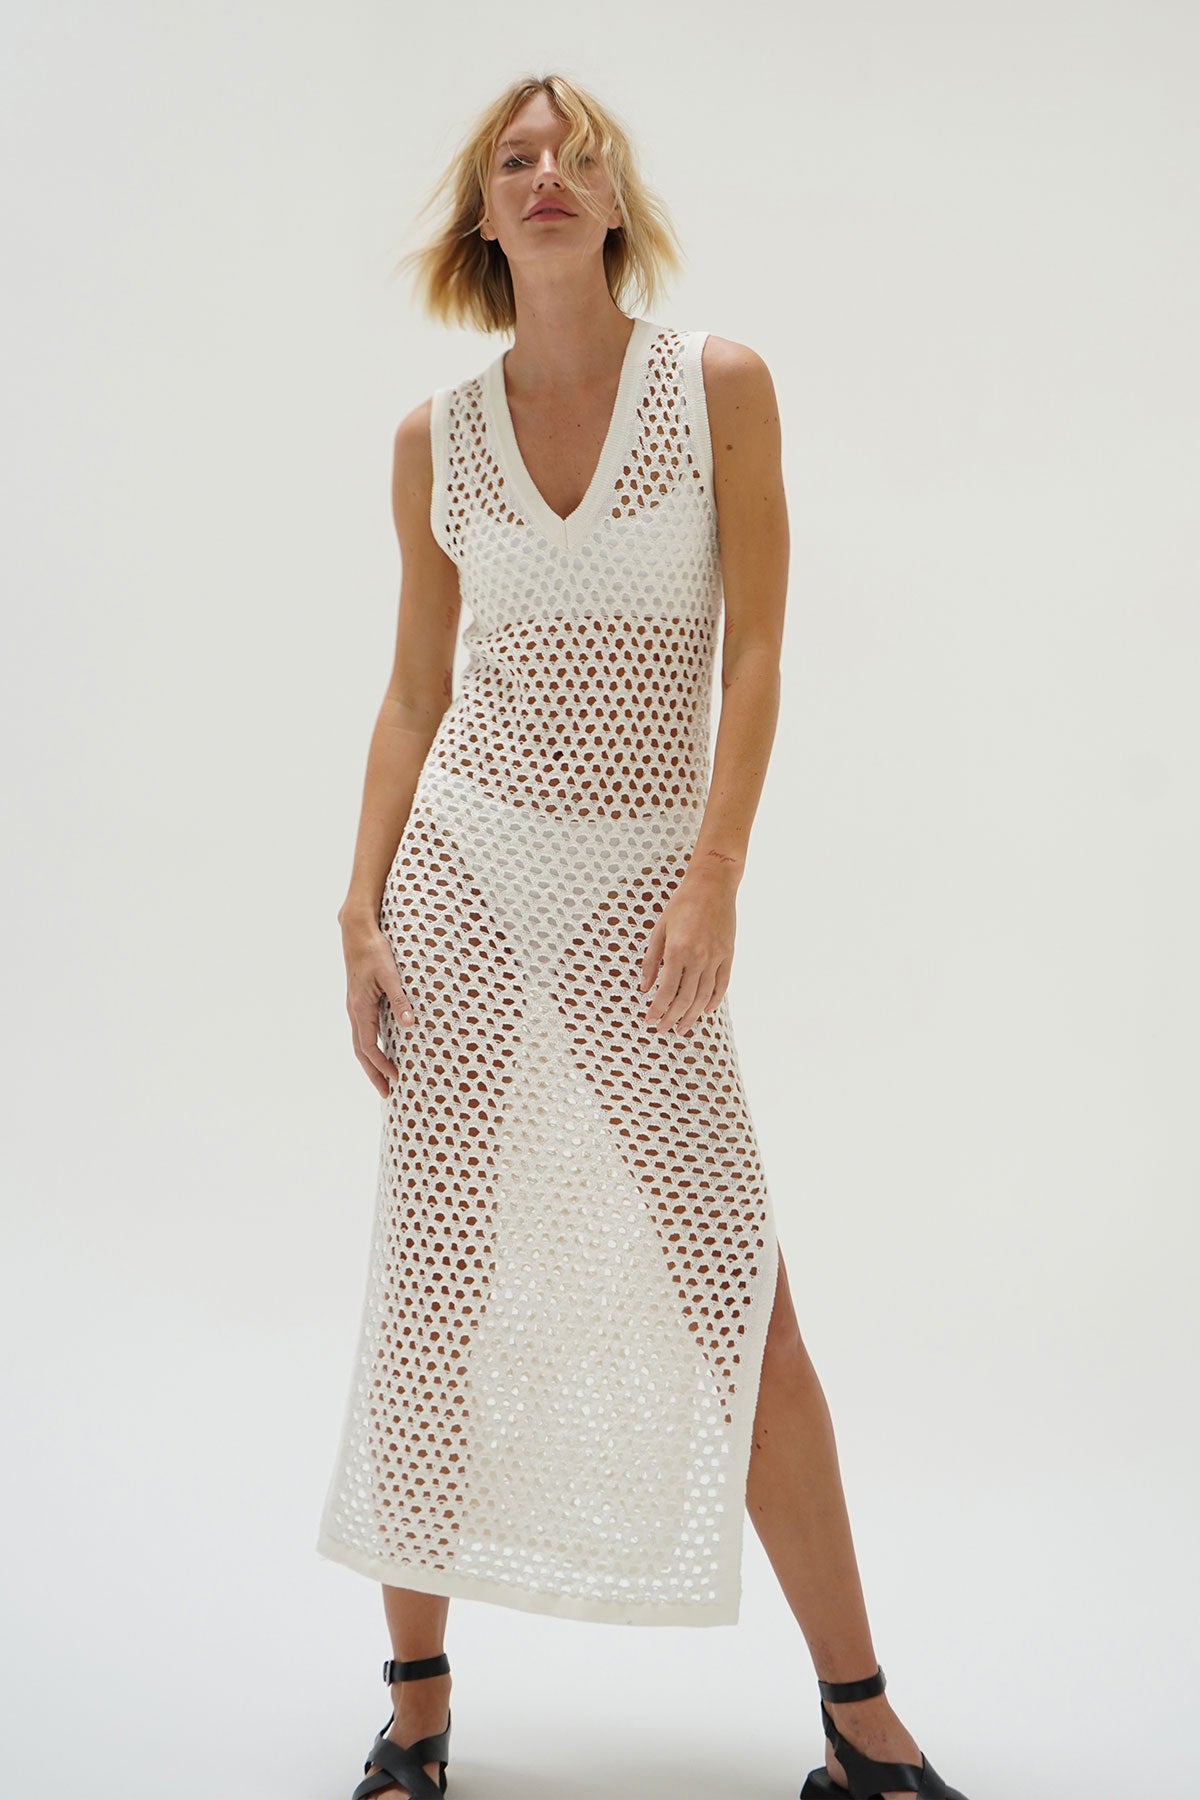 LNA Althaia V Open Knit Maxi Dress in White